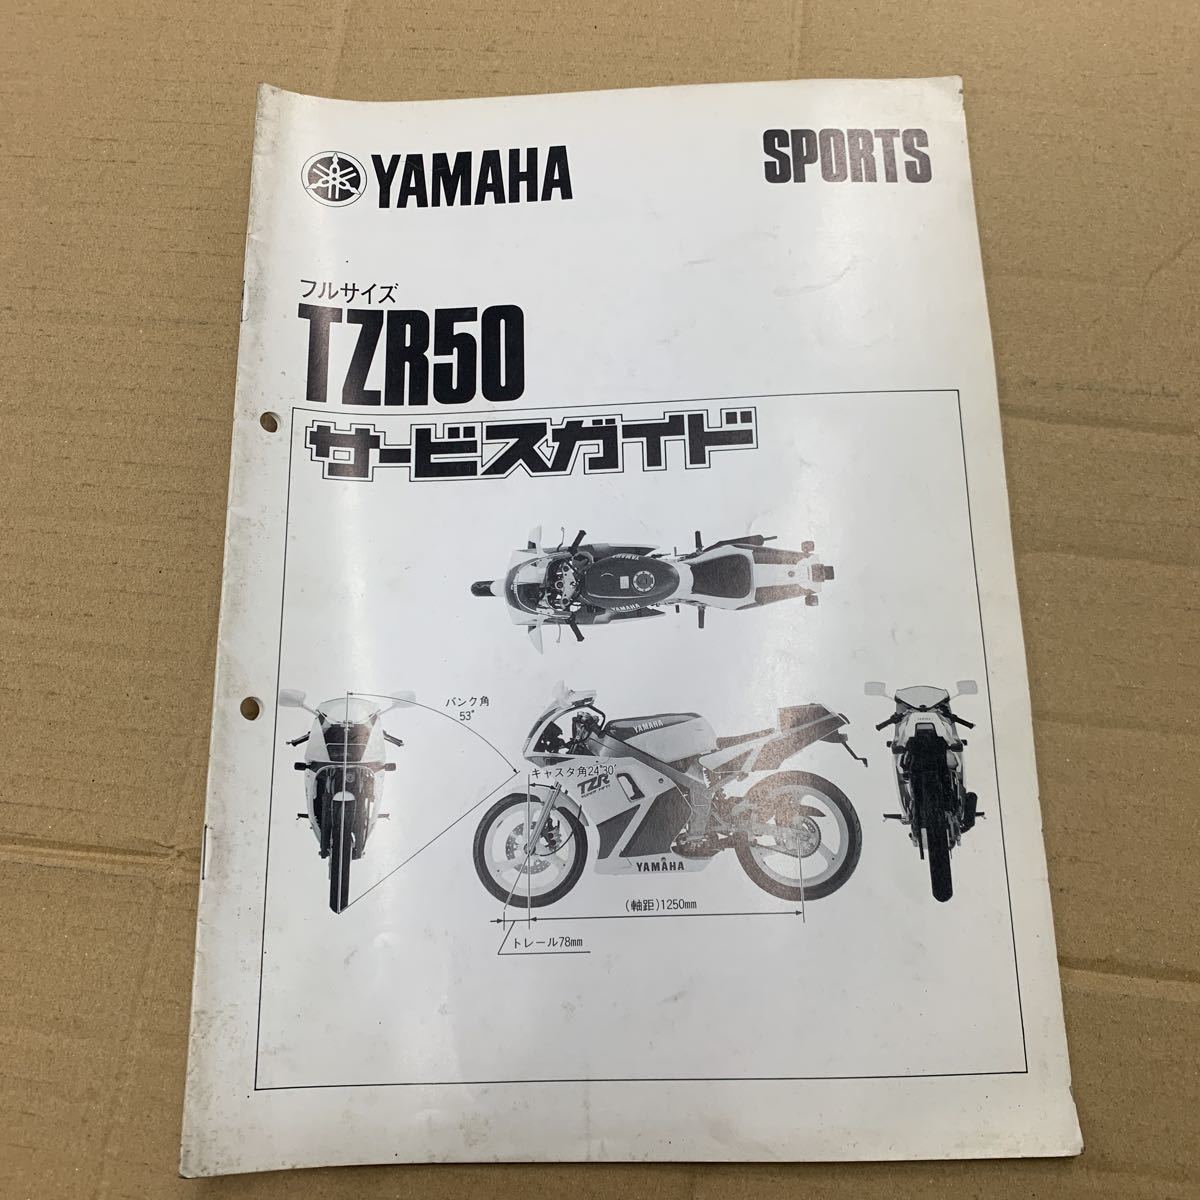 tzr50 サービスマニュアル YAMAHA ヤマハ ガイド_画像1